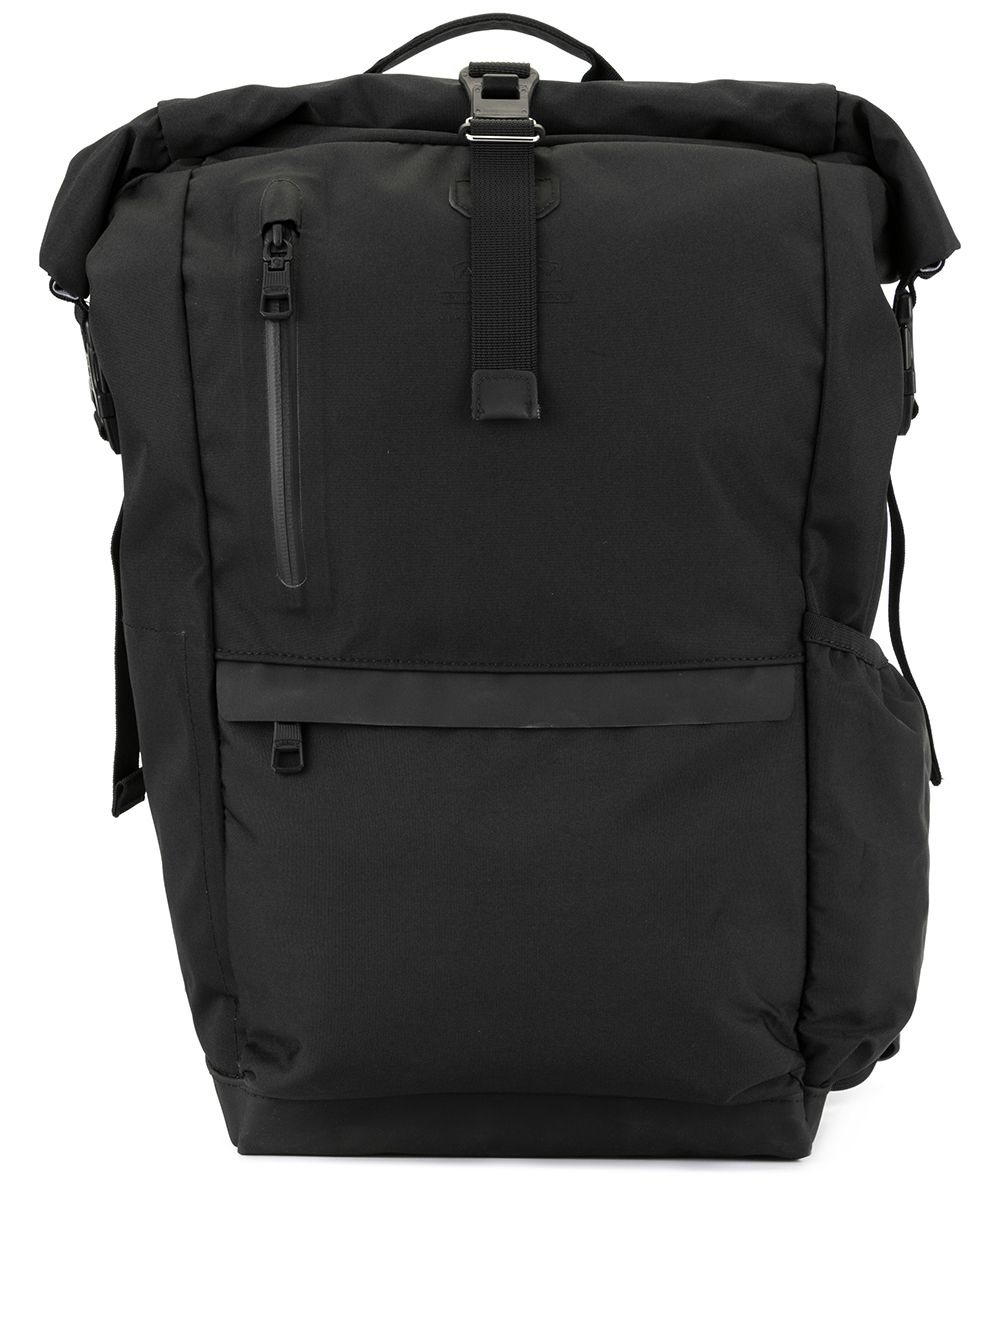 As2ov 210D multi-pocket backpack | Smart Closet